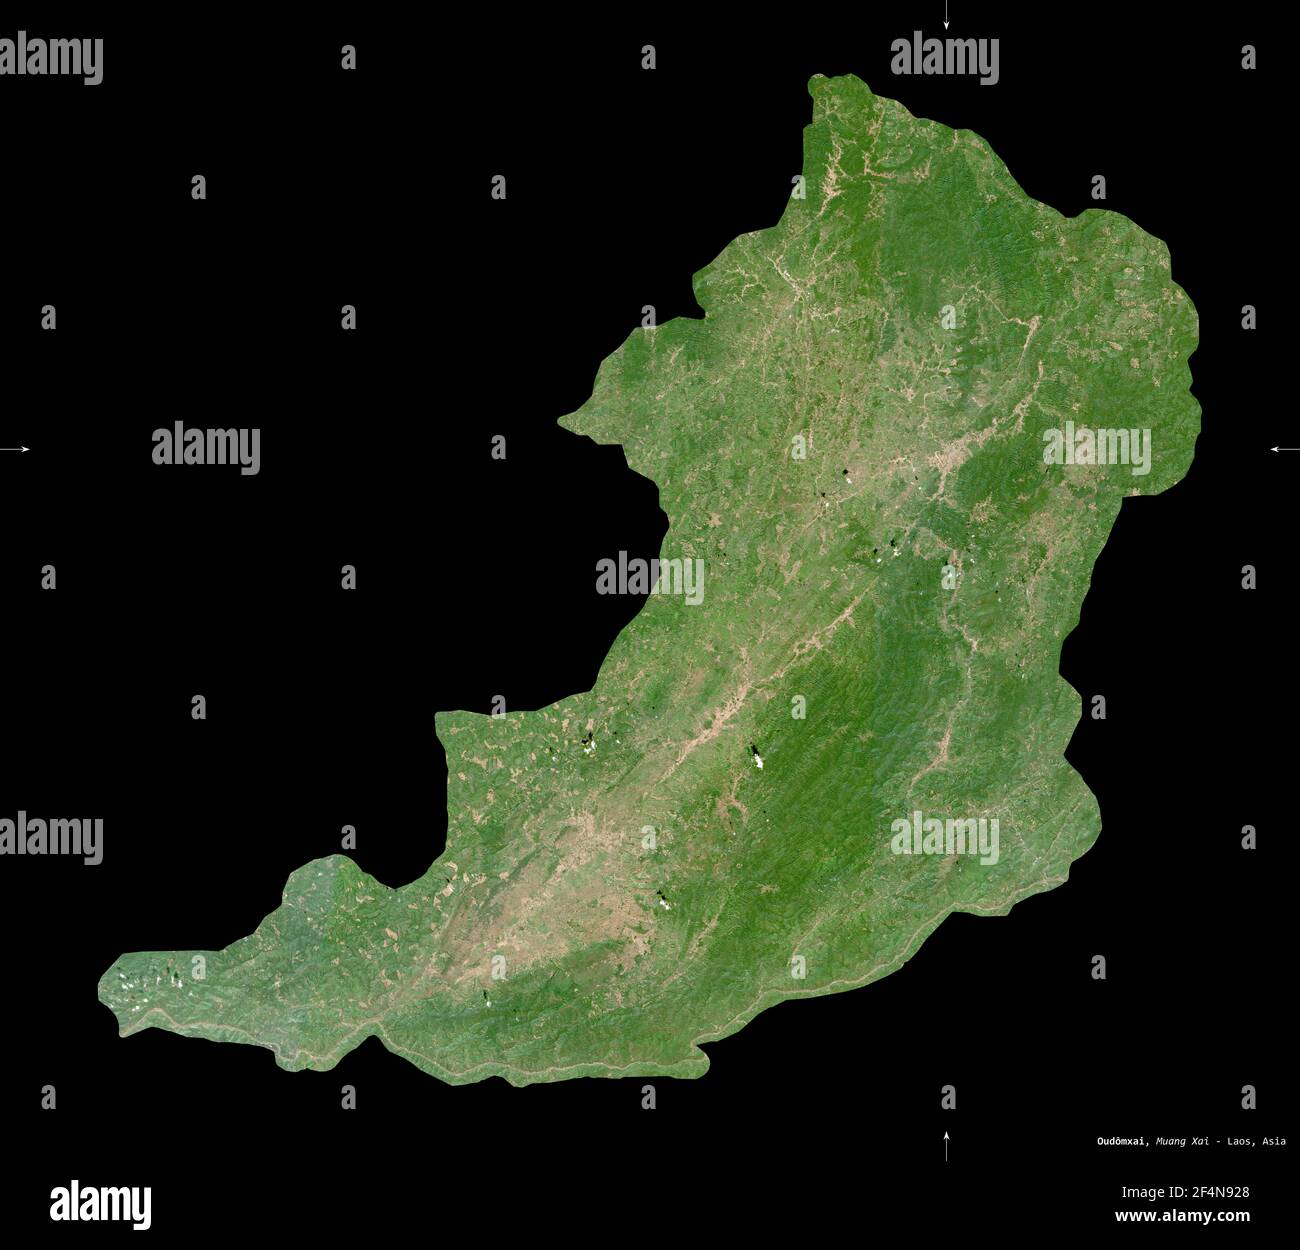 Oudomxai, provincia del Laos. Immagini satellitari Sentinel-2. Forma isolata su nero. Descrizione, ubicazione della capitale. Contiene Copernicus modificato Foto Stock